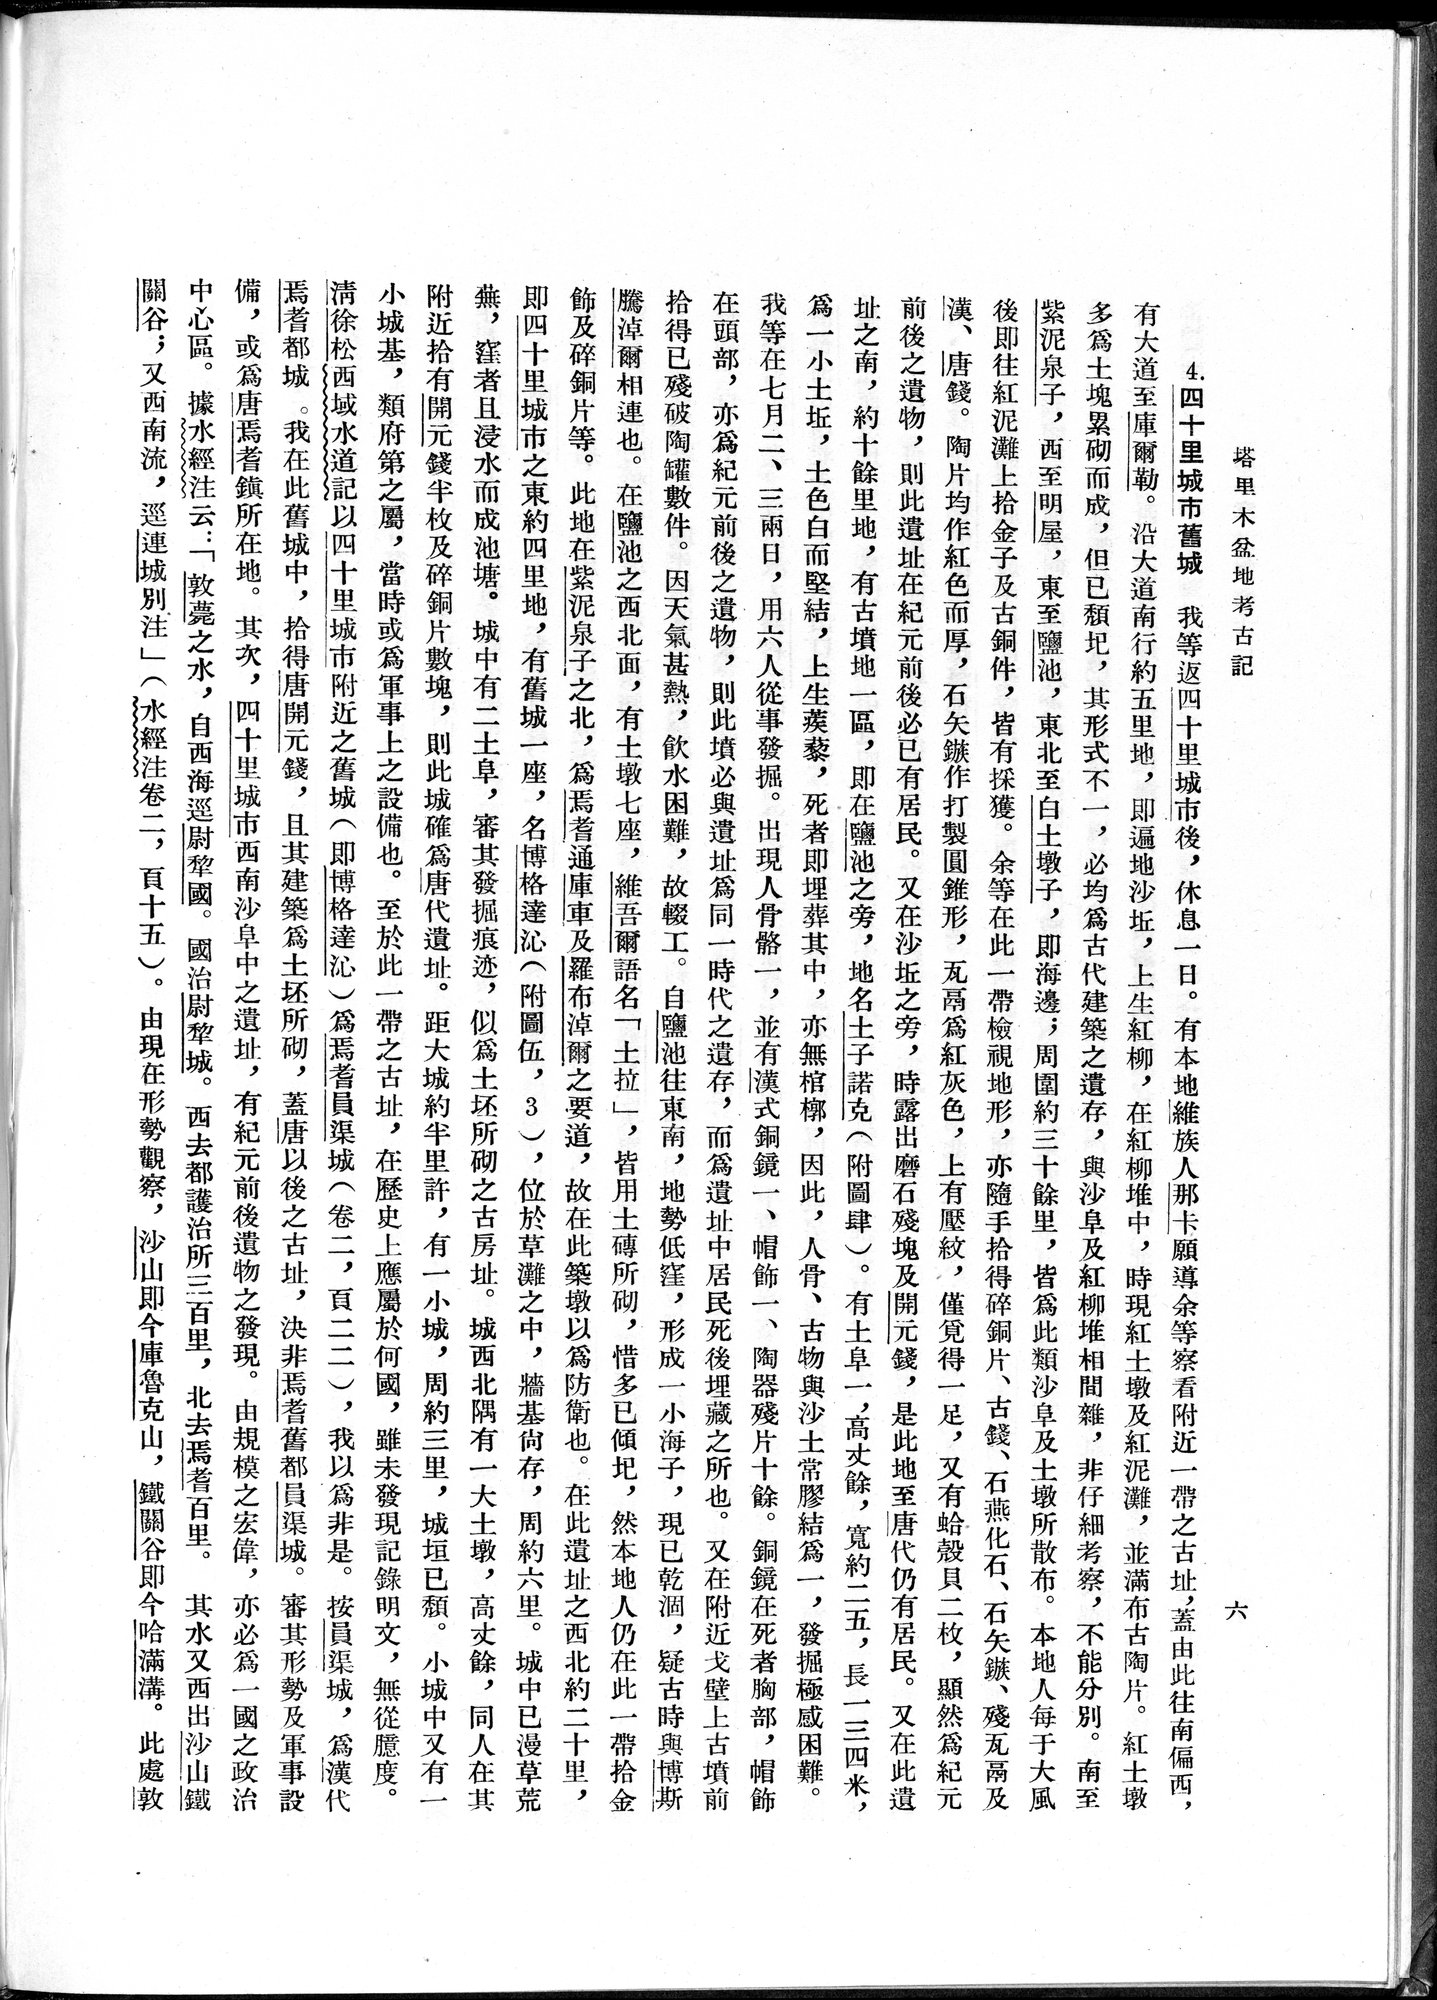 塔里木盆地考古記 : vol.1 / Page 30 (Grayscale High Resolution Image)